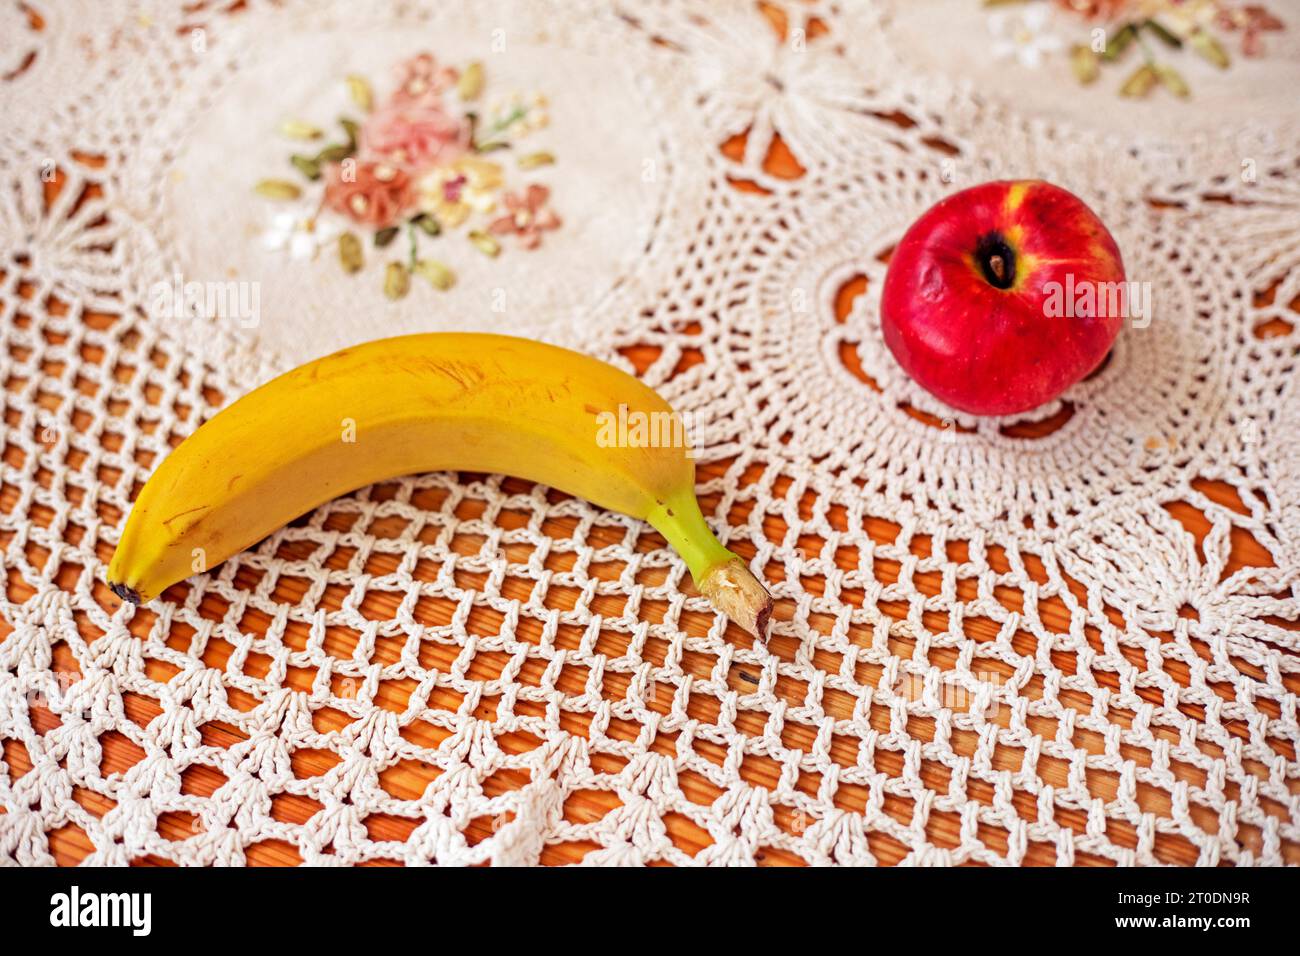 banana gialla matura sul tavolo accanto alla mela Foto Stock